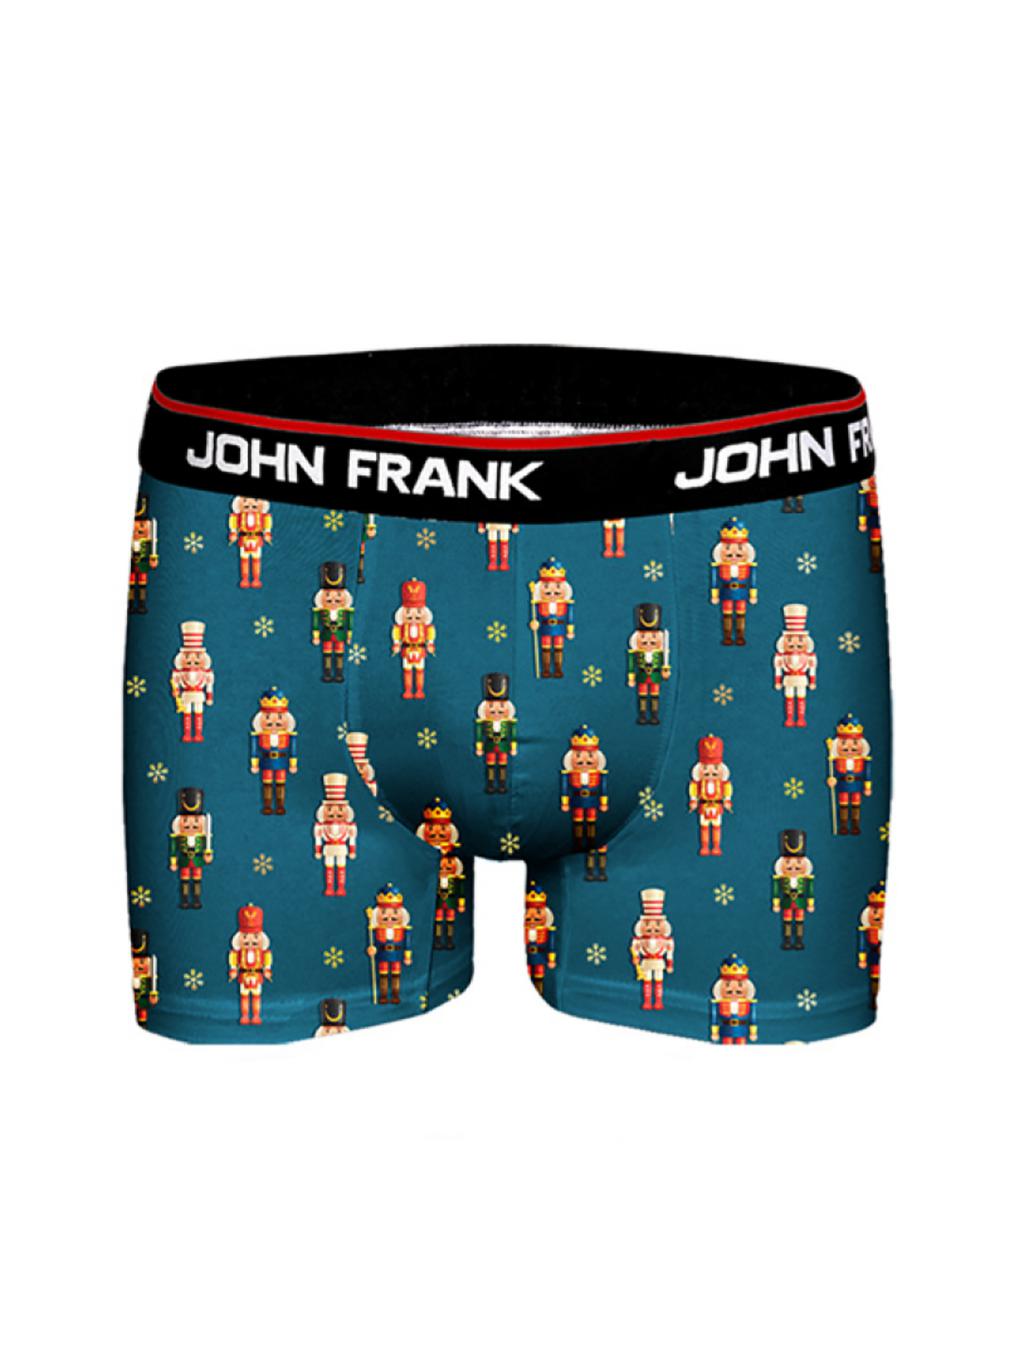 JFBD29 - pánské boxerky John Frank